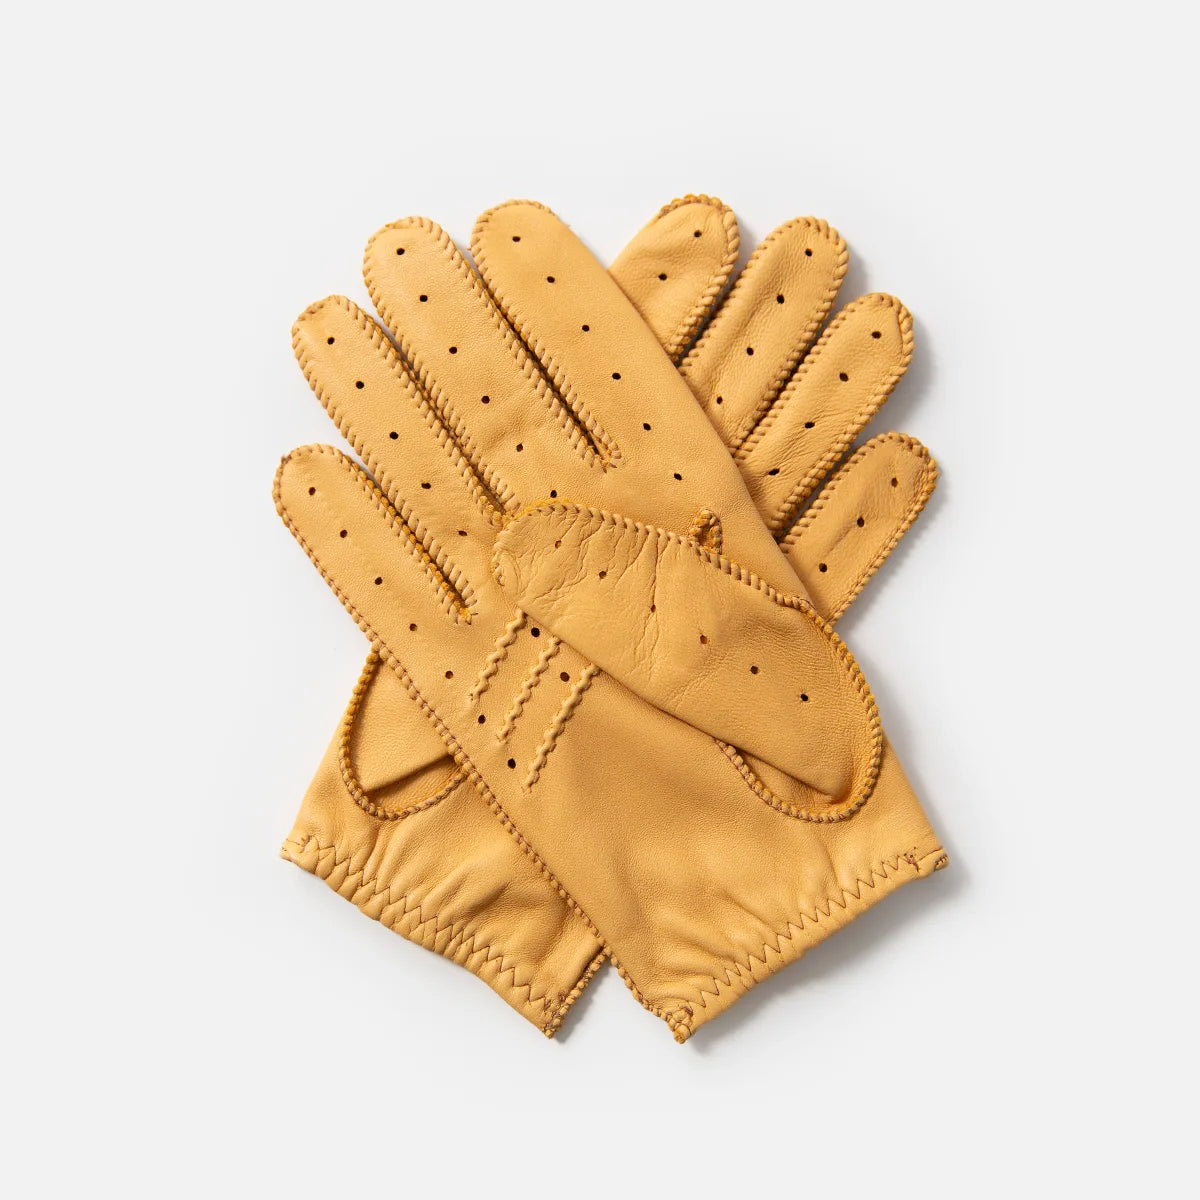 The Targa Driving Gloves in Cream